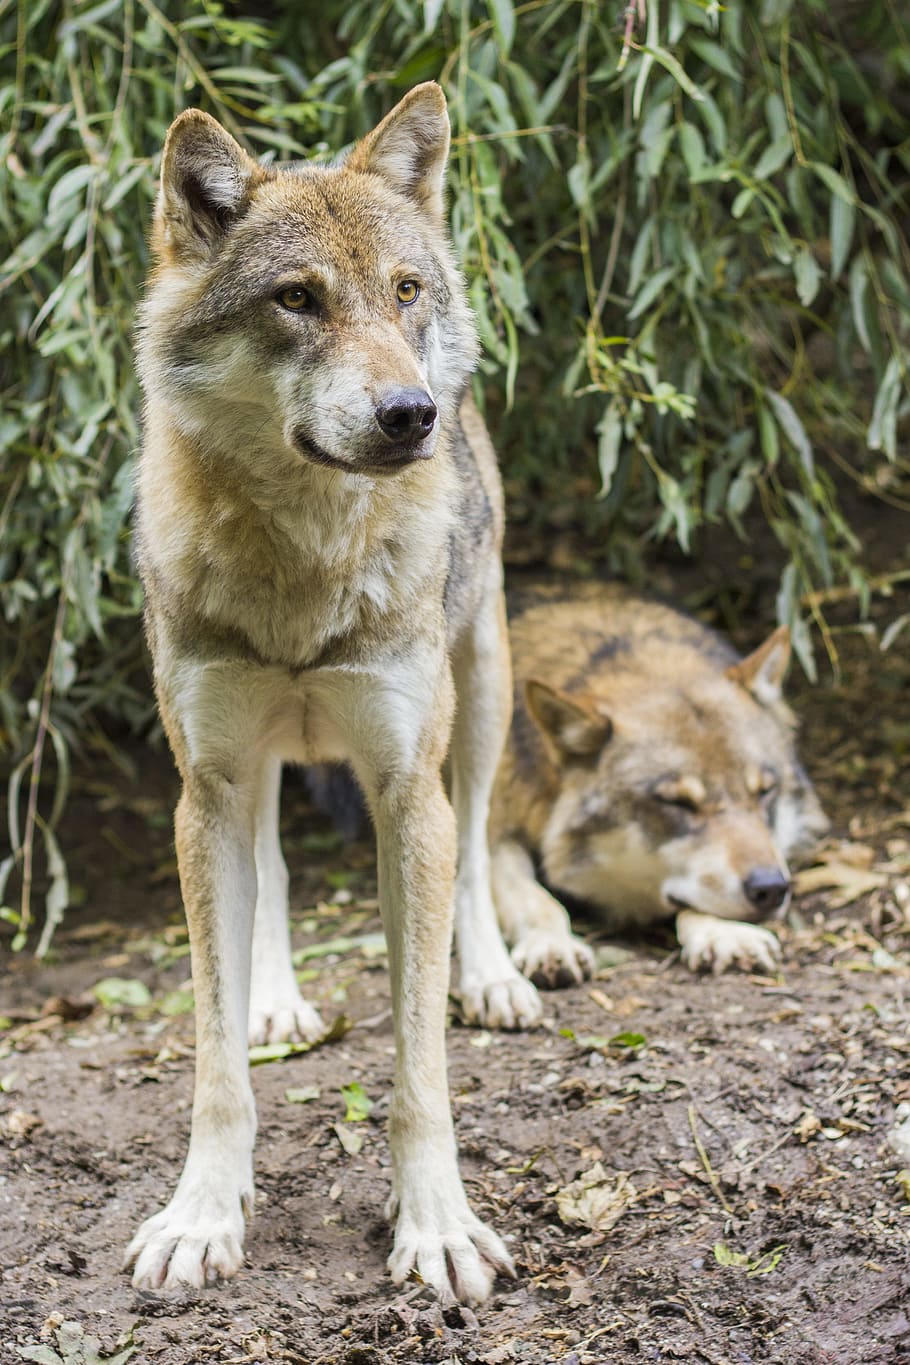 dos, perros de pelo corto blanco y marrón, lobos, canis lupus, lobo europeo, animal salvaje, atención, depredador, manada, hundeartig